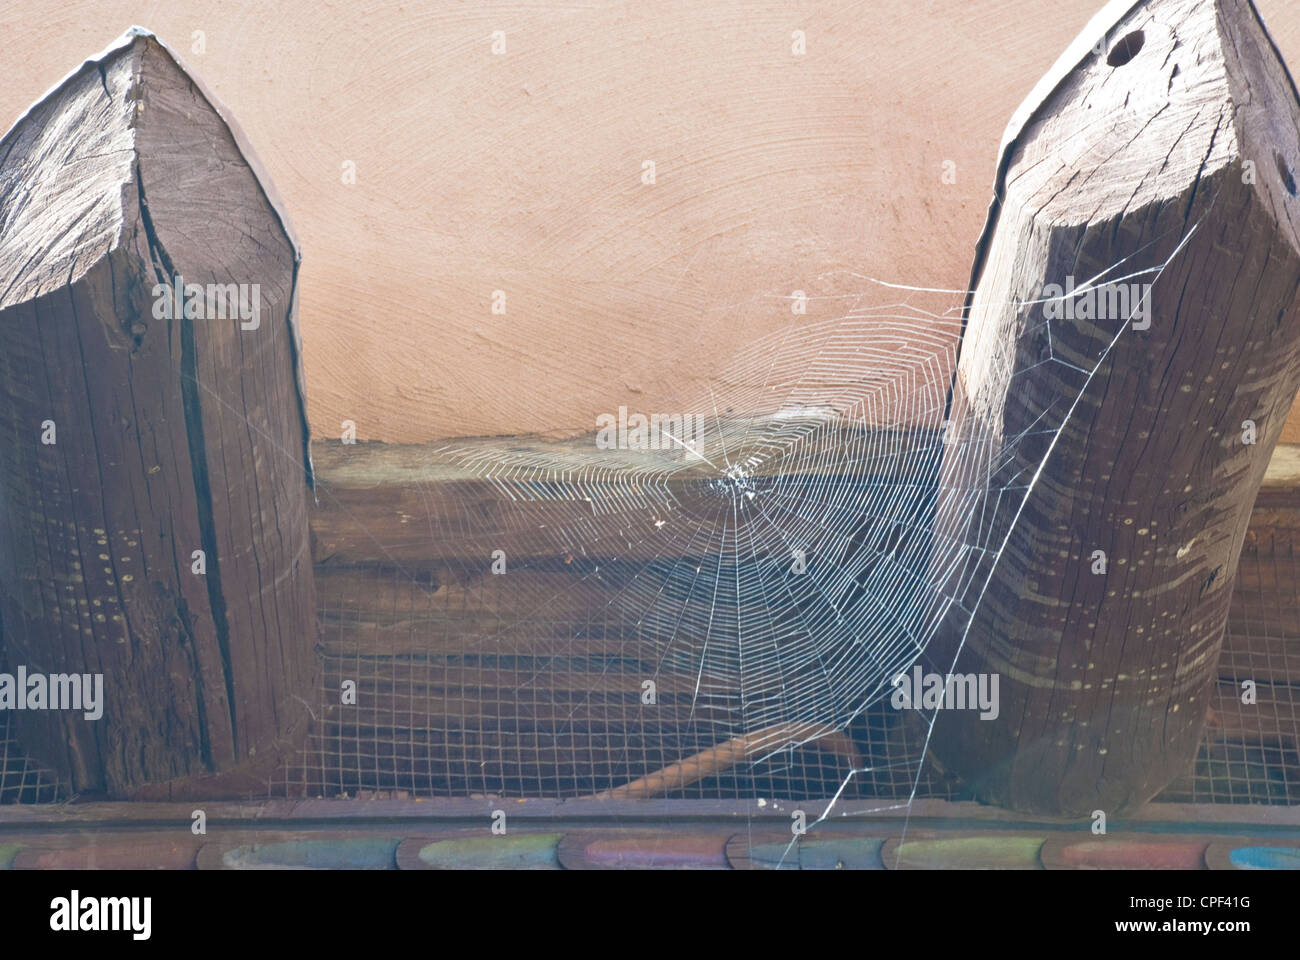 Ein Spinnennetz ist eingebettet zwischen zwei Vigas außerhalb eines Museums in Santa Fe. Stockfoto